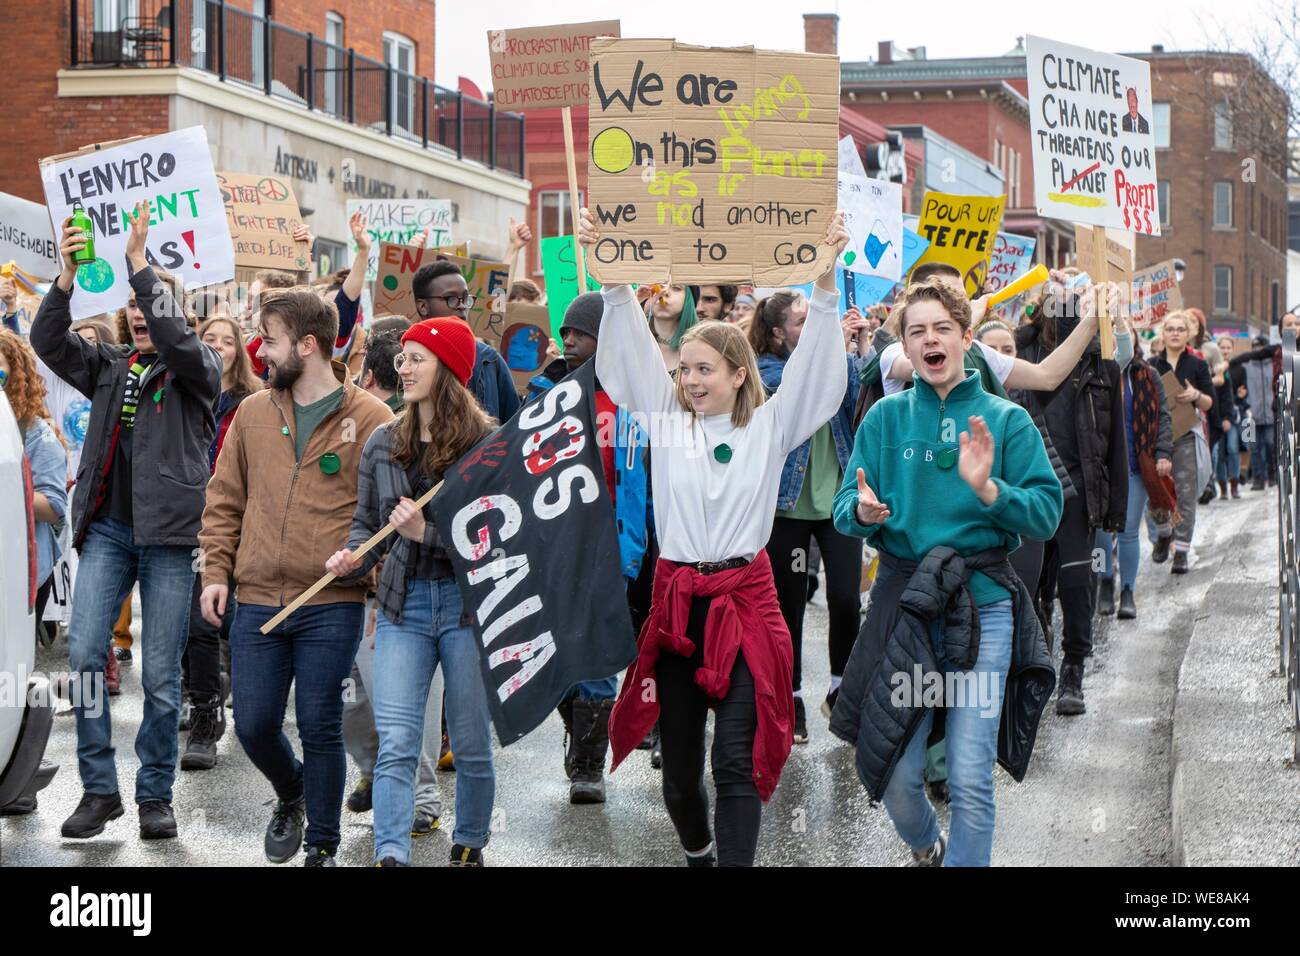 Kanada, Quebec province, Eastern Townships Region oder Gartenschau, die Stadt von Sherbrooke, Demonstration der Schüler und Schülerinnen, der große Marsch der jungen Menschen, um den Planeten zu retten Stockfoto